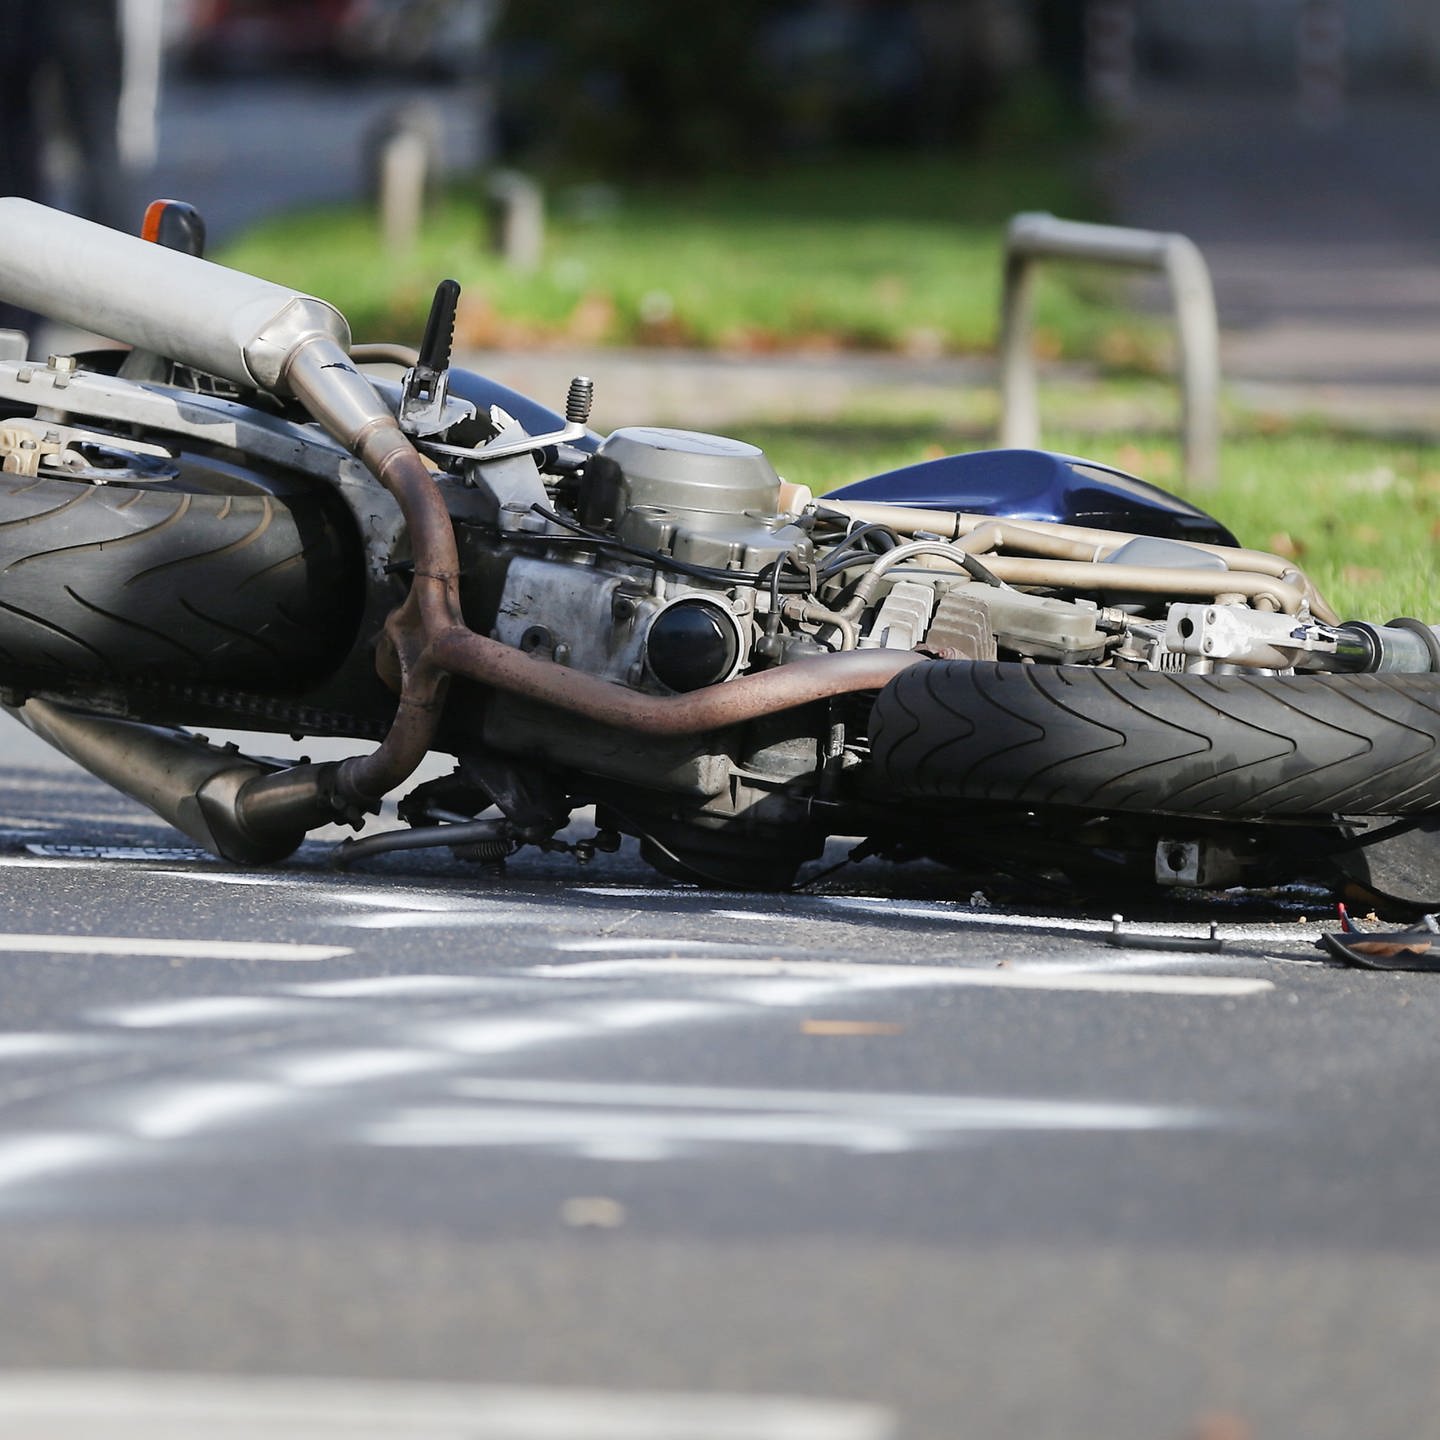 Auto fährt Motorrad auf – zwei Schwerverletzte bei Unfall in